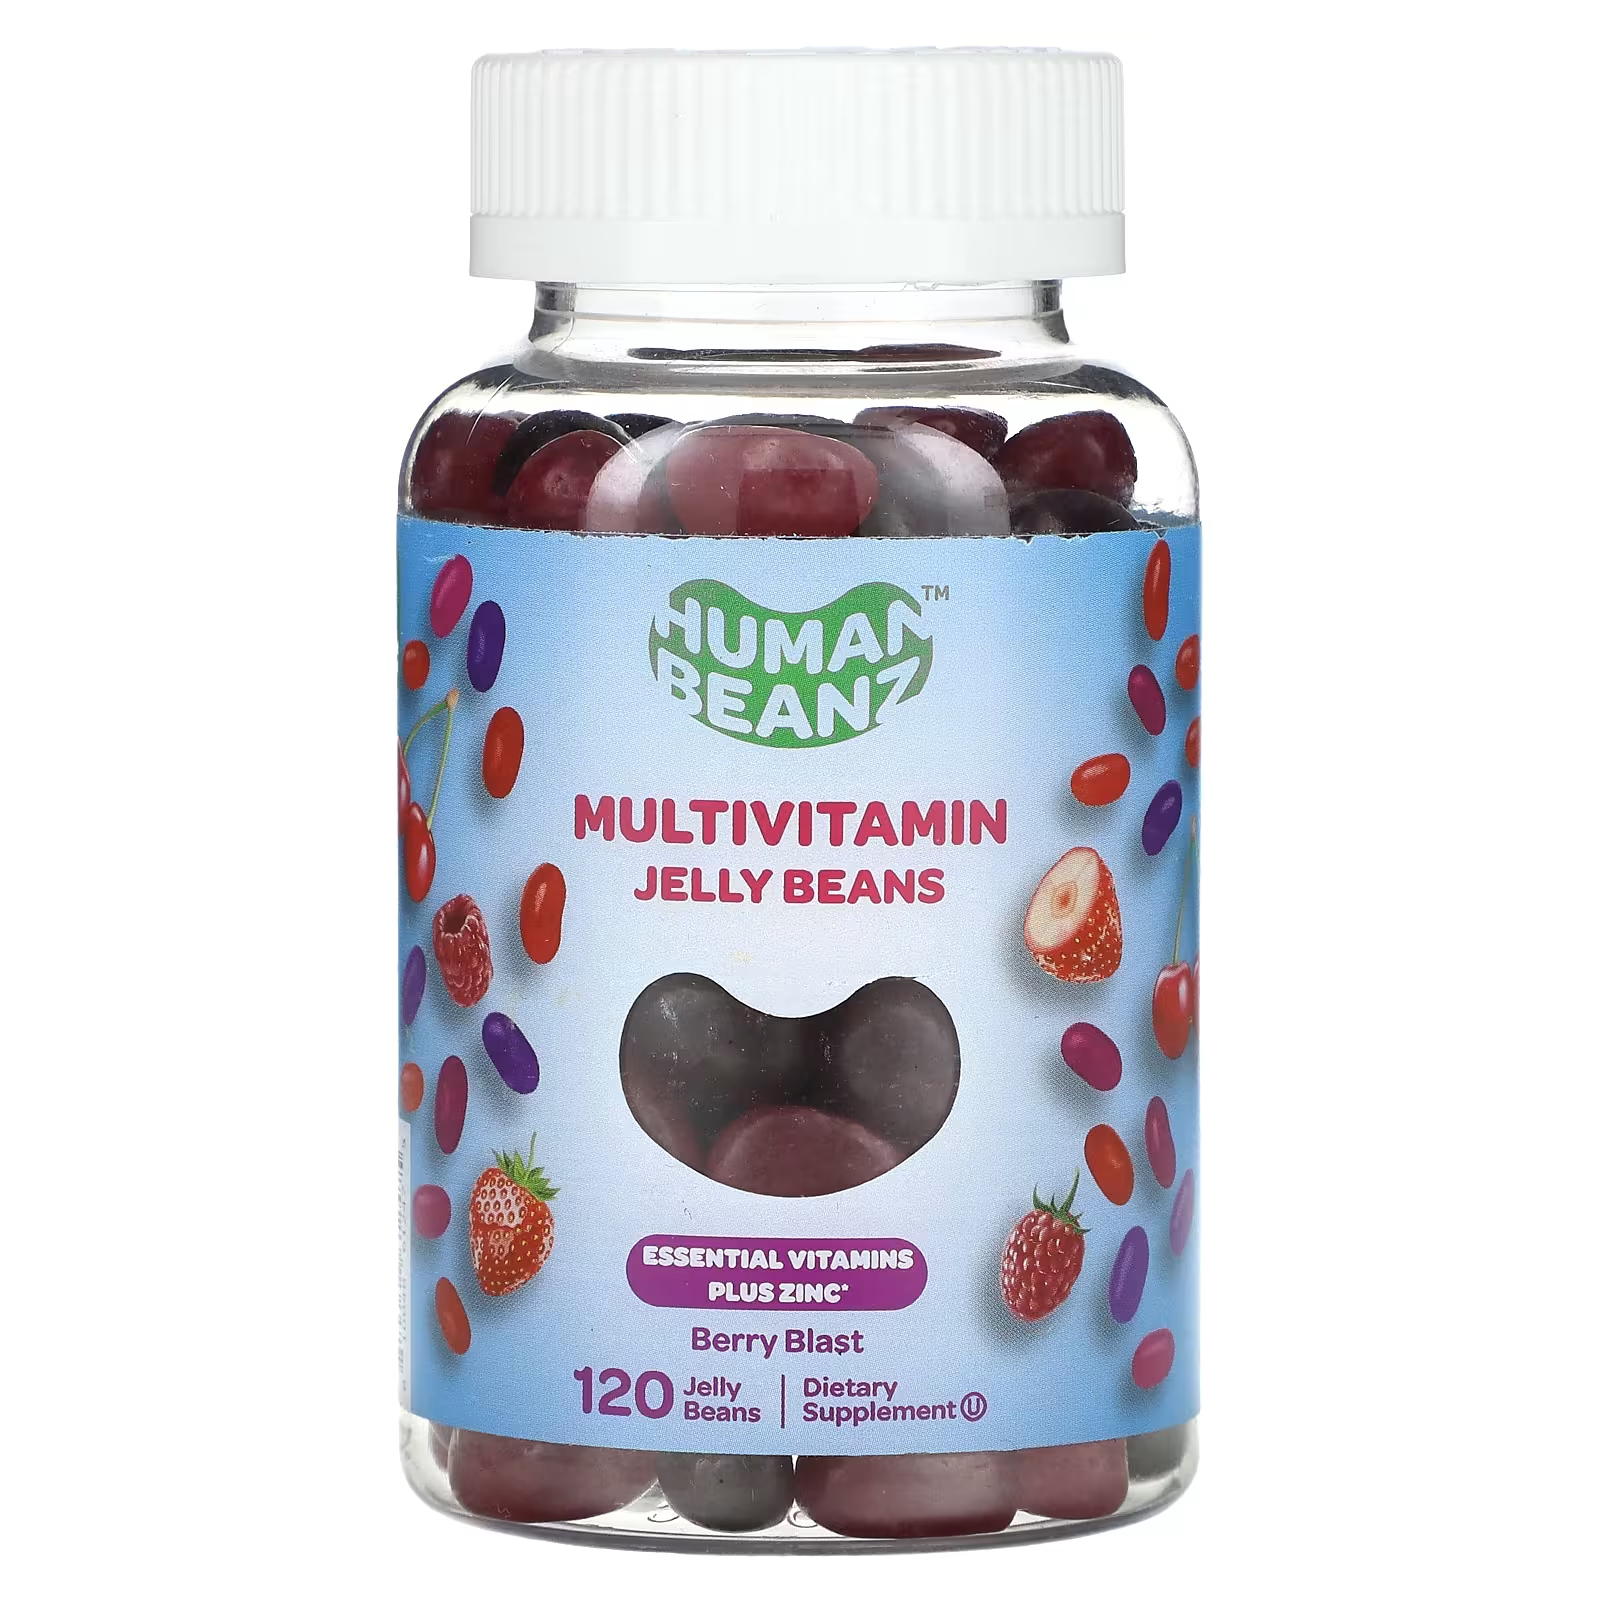 Мультивитаминная добавка Human Beanz Berry Blast, 120 жевательных конфет